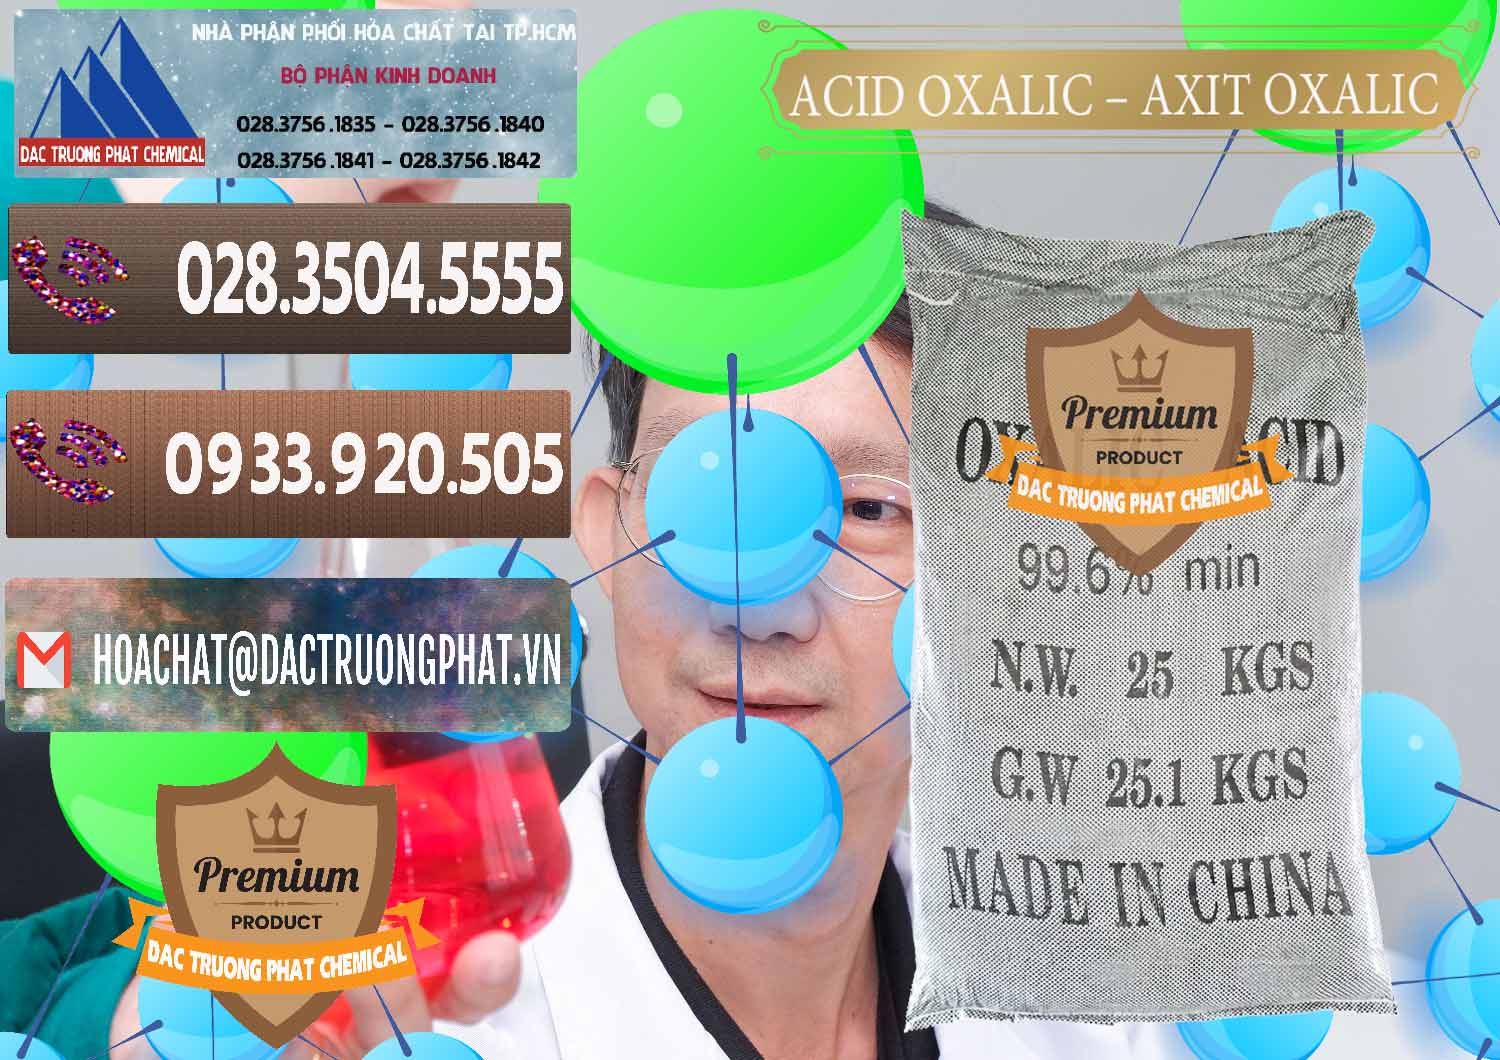 Cty chuyên bán _ phân phối Acid Oxalic – Axit Oxalic 99.6% Trung Quốc China - 0014 - Nhà cung ứng - phân phối hóa chất tại TP.HCM - hoachatviet.net